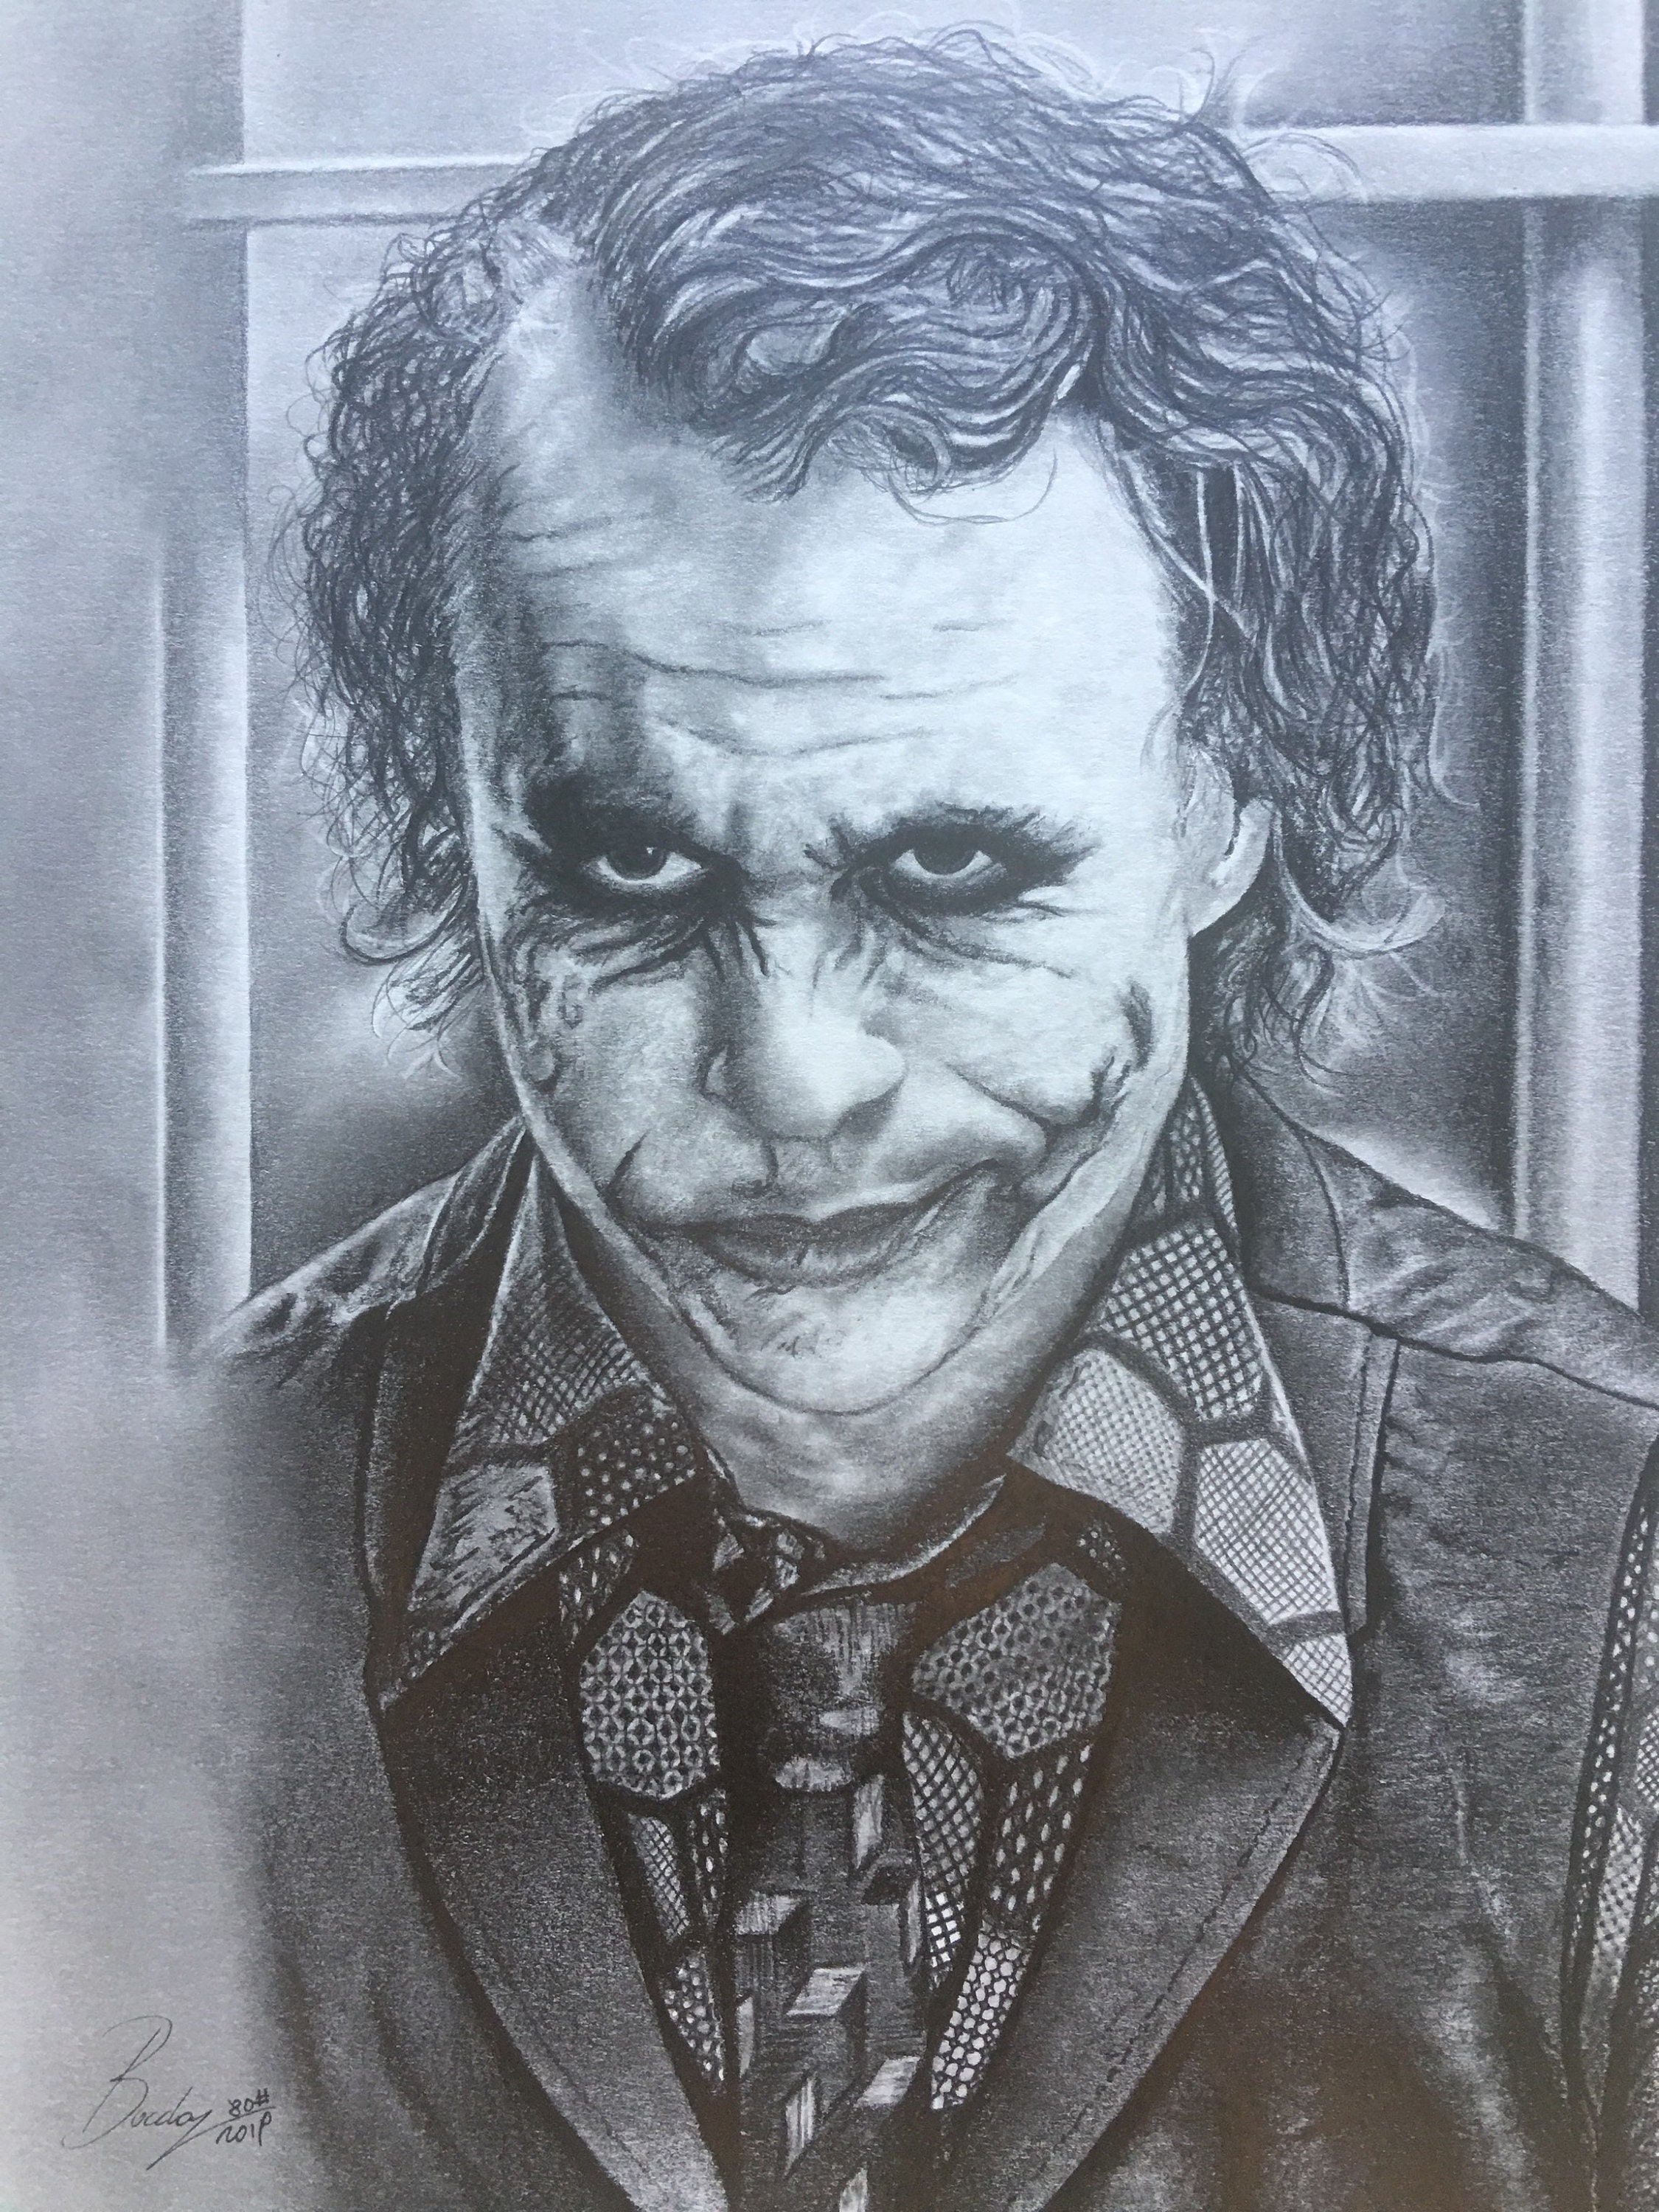 Original Pencil Portrait of Joker Size A421.00 X 29.70 Cm - Etsy